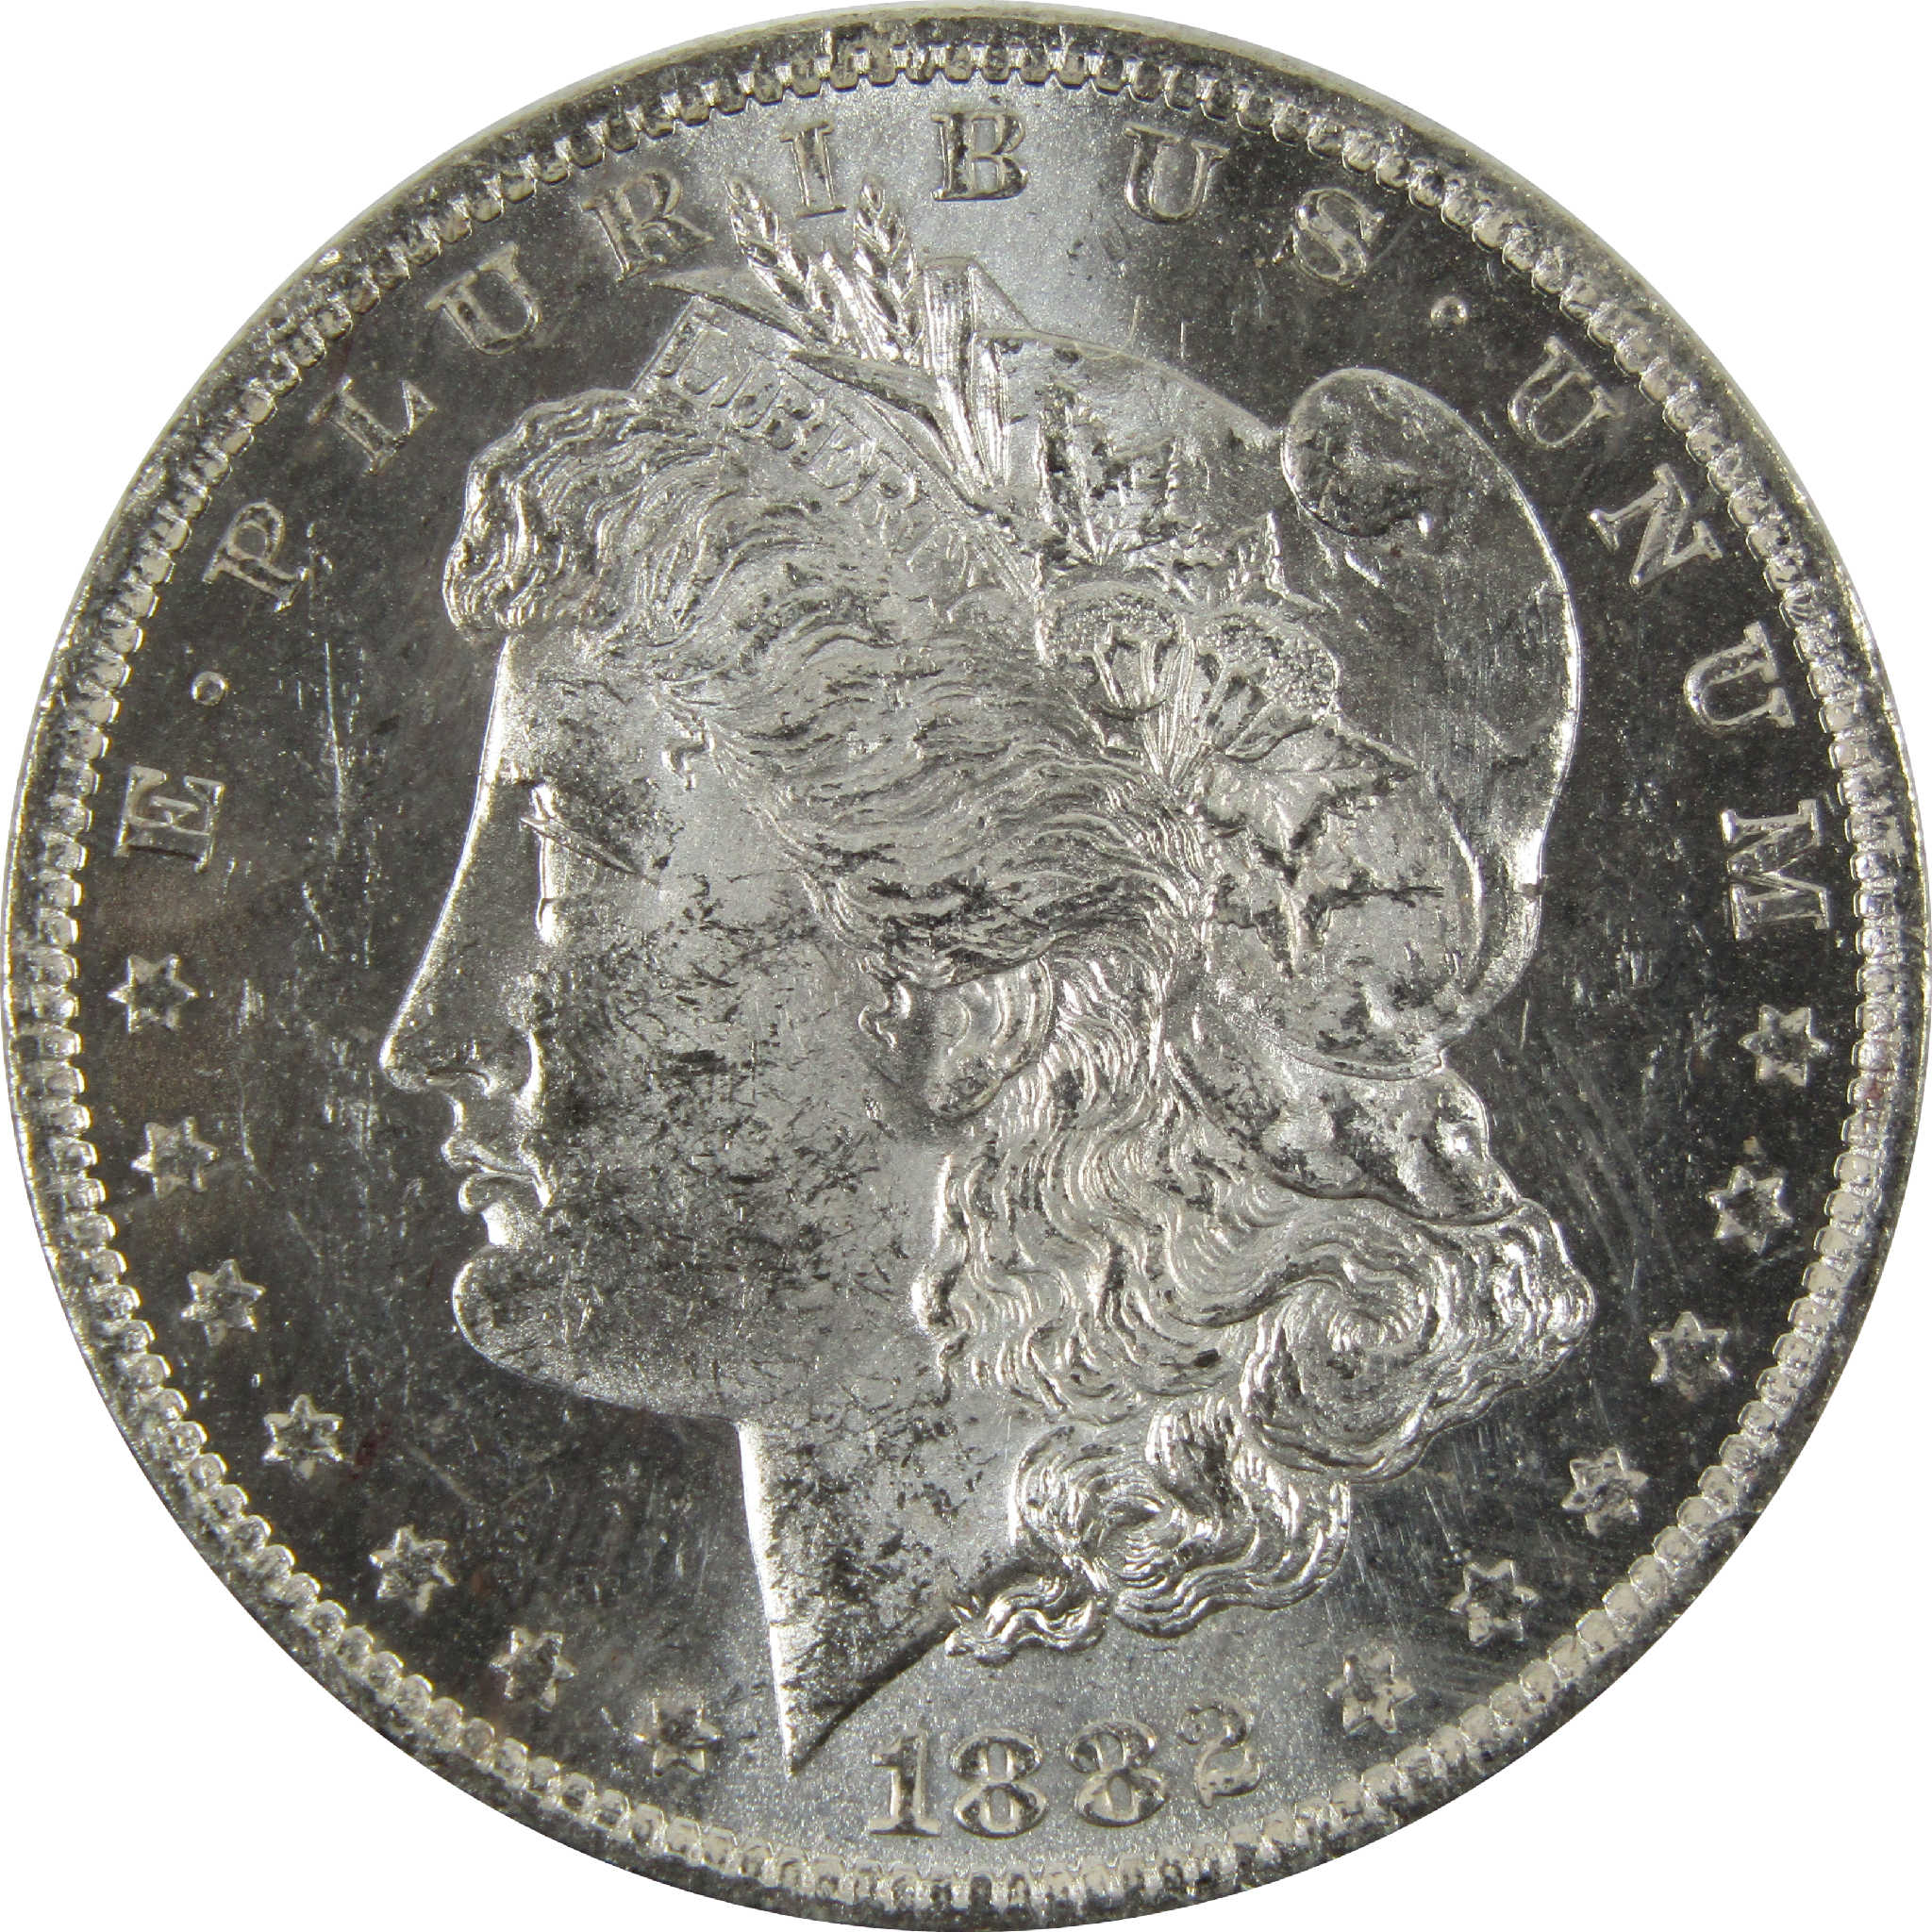 1882 O Morgan Dollar BU Uncirculated 90% Silver $1 Coin SKU:I8907 - Morgan coin - Morgan silver dollar - Morgan silver dollar for sale - Profile Coins &amp; Collectibles